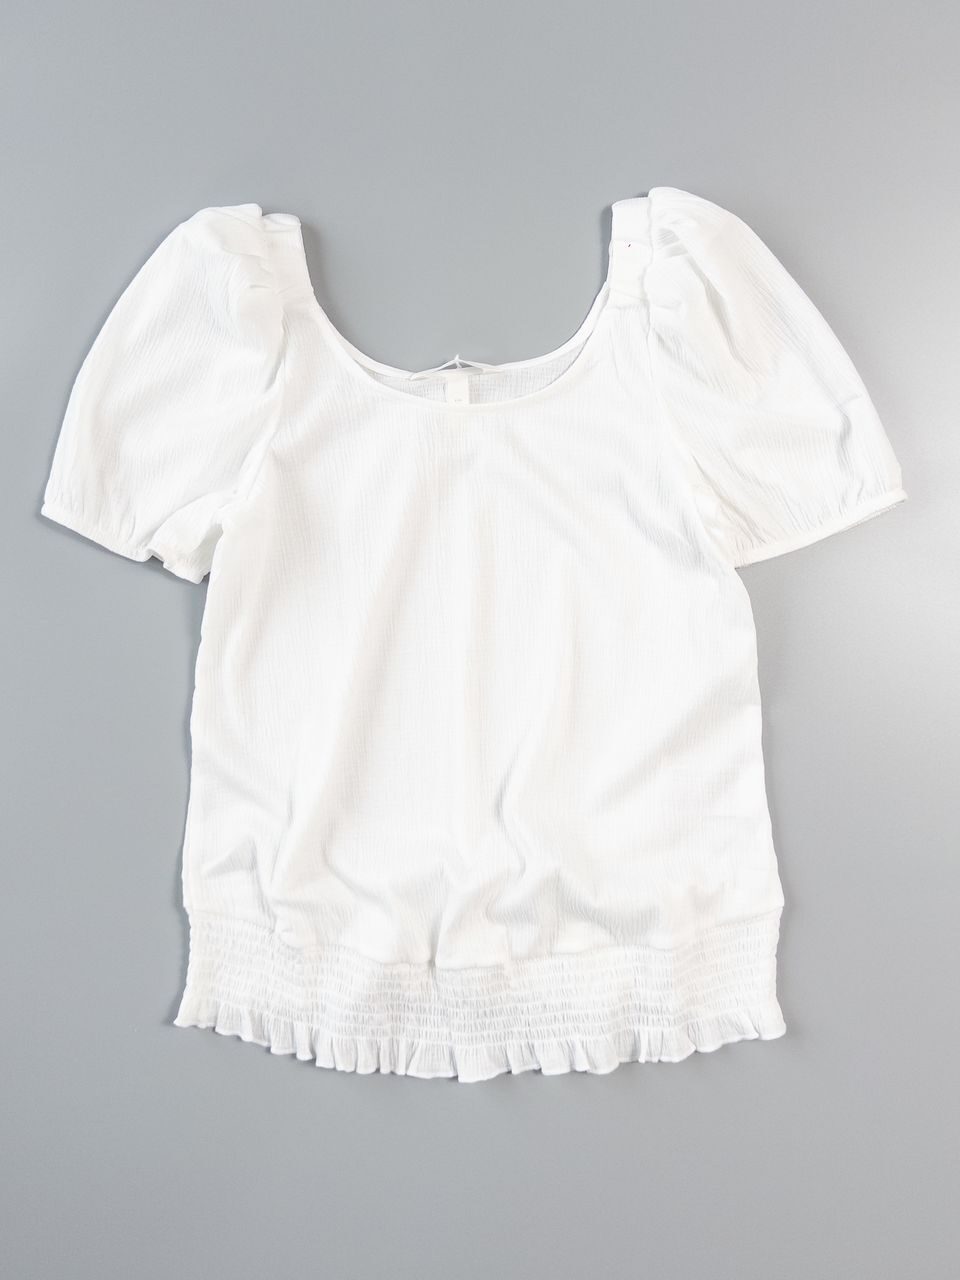 МАМА Блуза с пышными рукавами цвет белый размер EUR М (rus 44-46) H&M